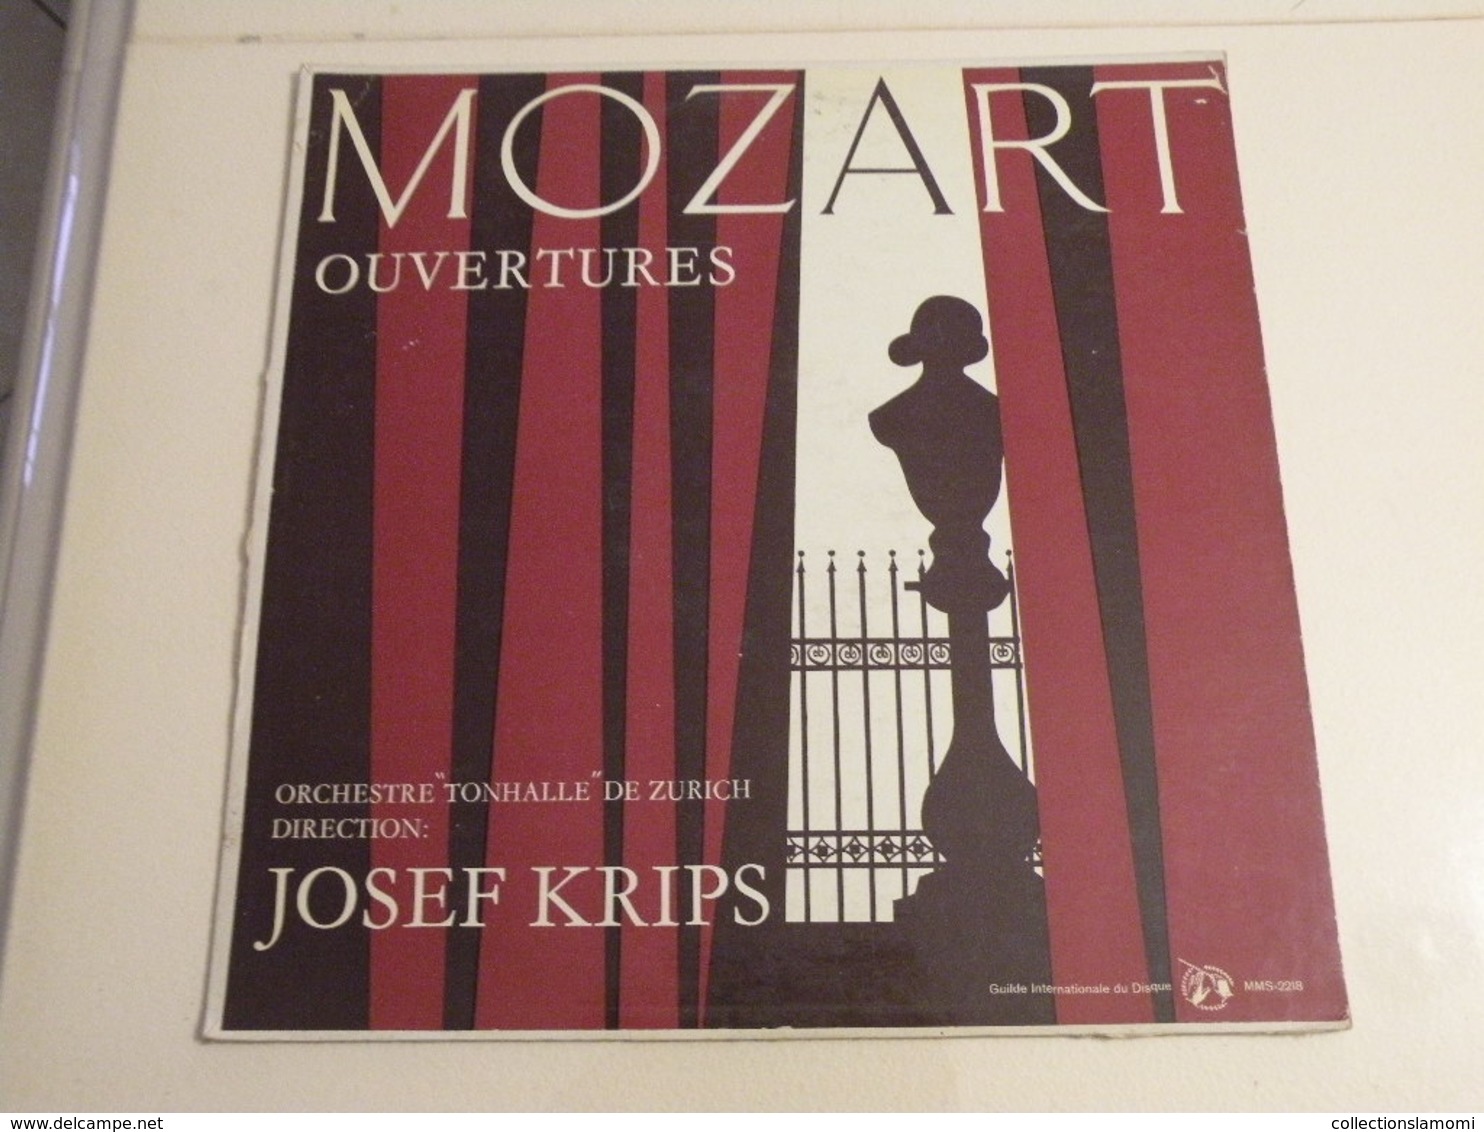 Mozart, Ouvertures Josef Krips - (Titres Sur Photos) - Vinyle 33 T LP - Classical